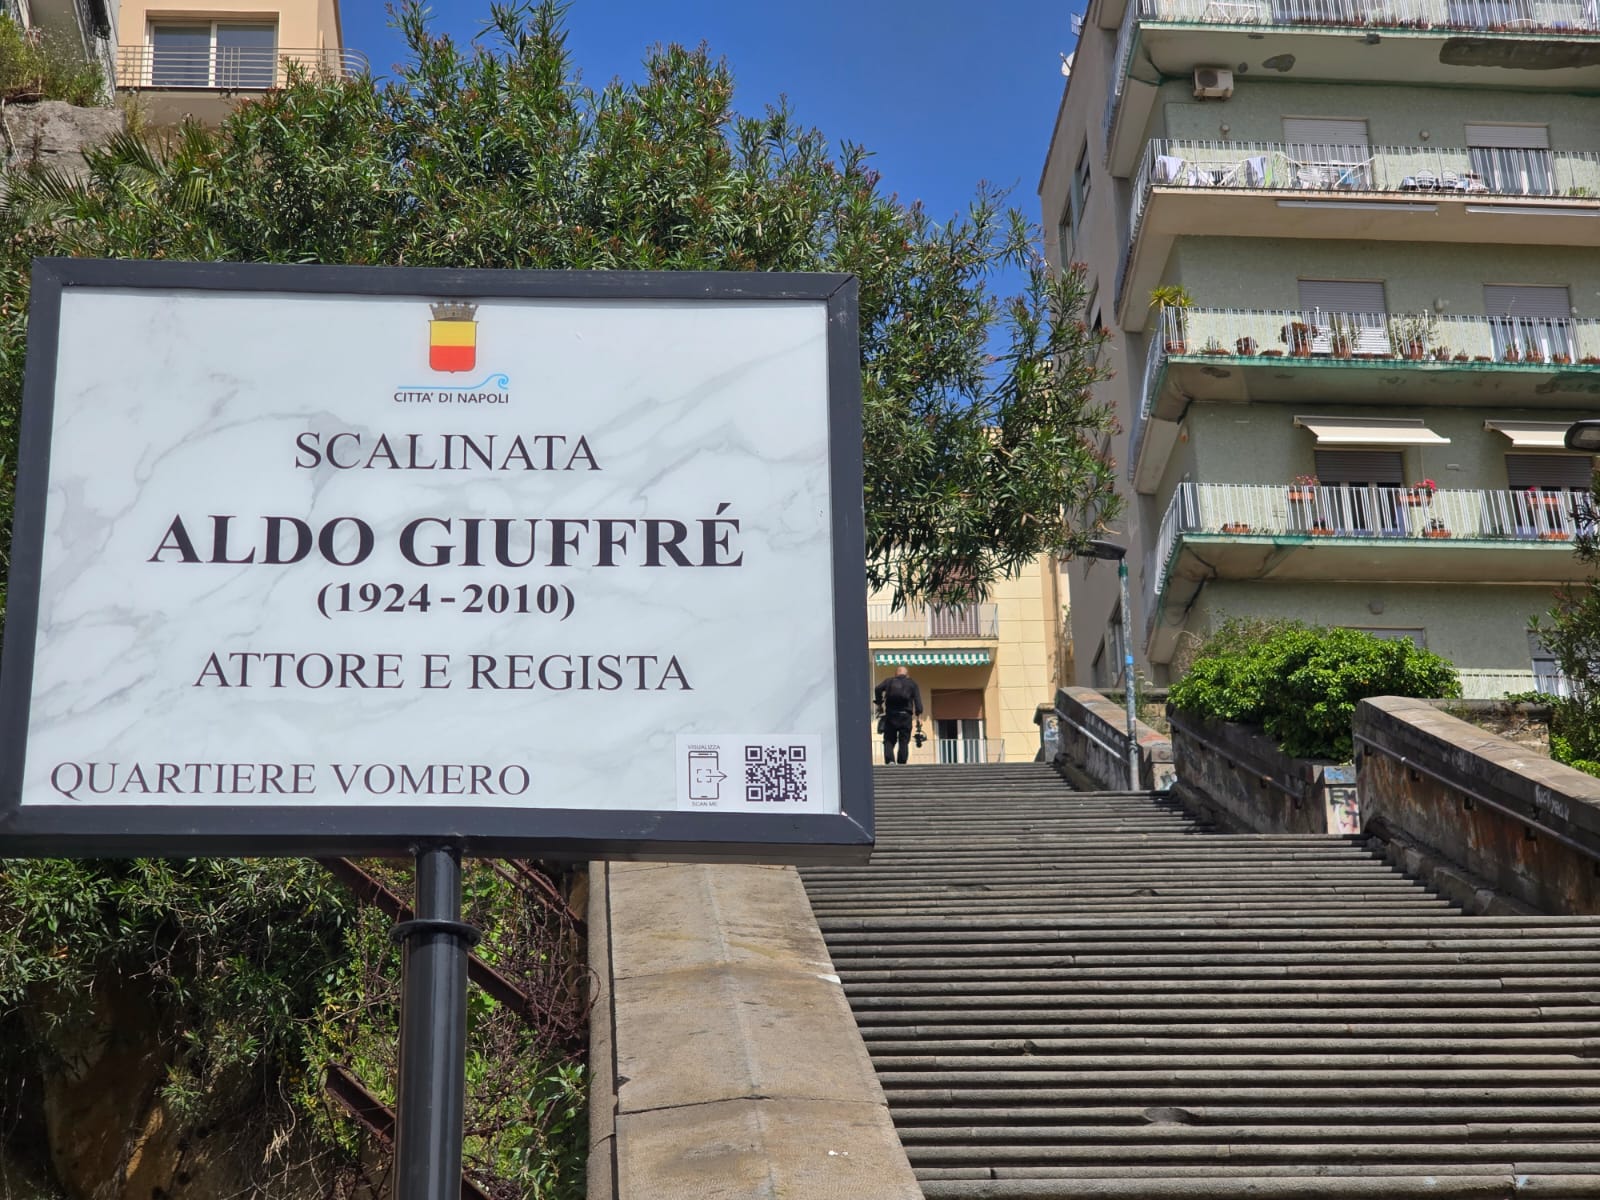 La targa posta alla base della scalinata dedicata all'attore e regista Aldo Giuffré, scomparso nel 2010